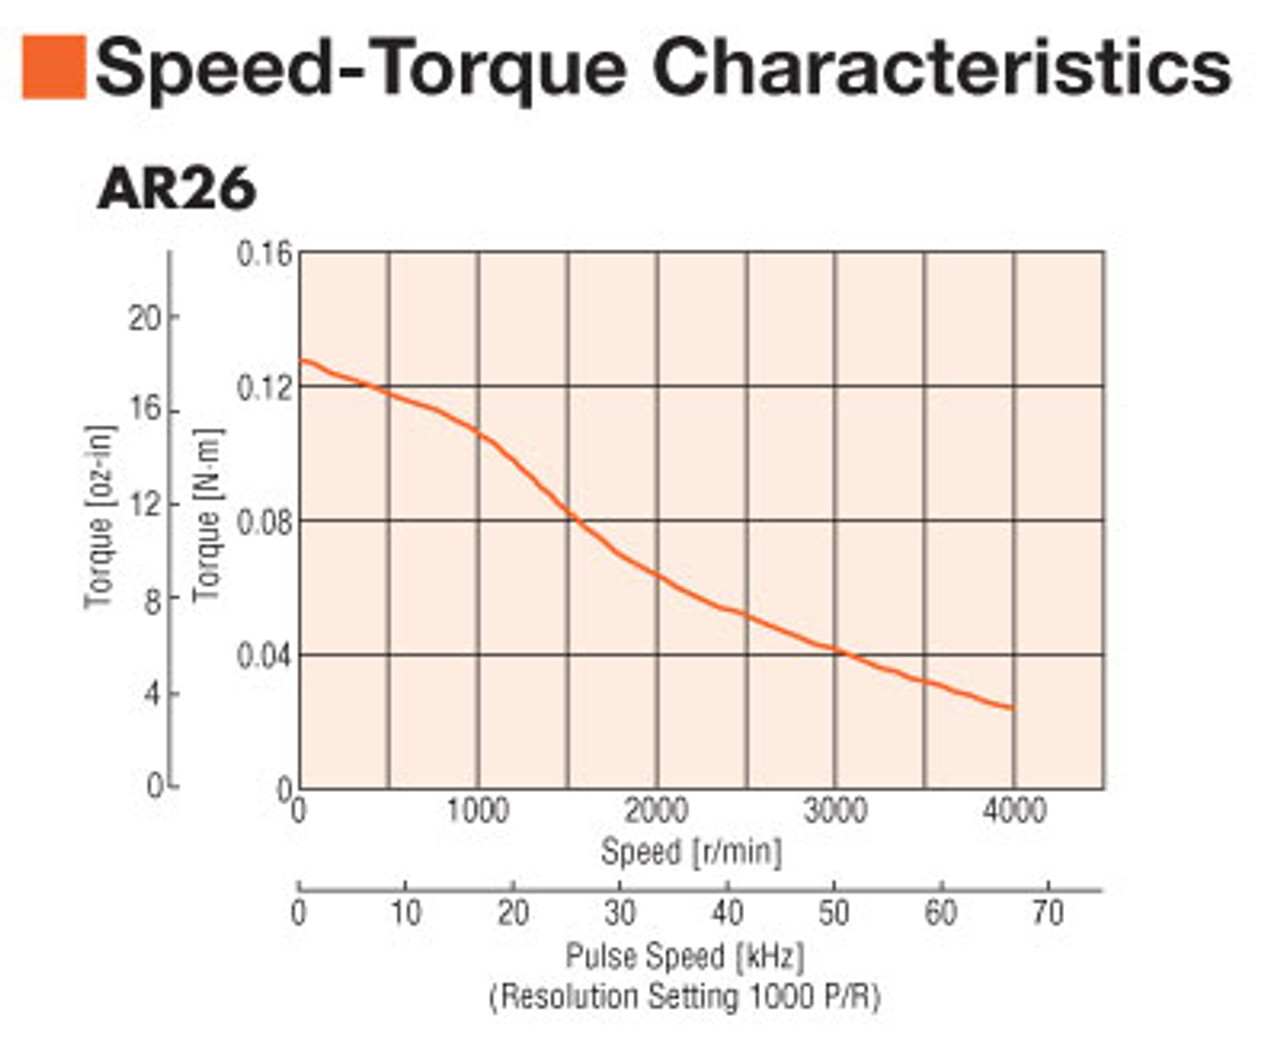 ARM26SBK - Speed-Torque